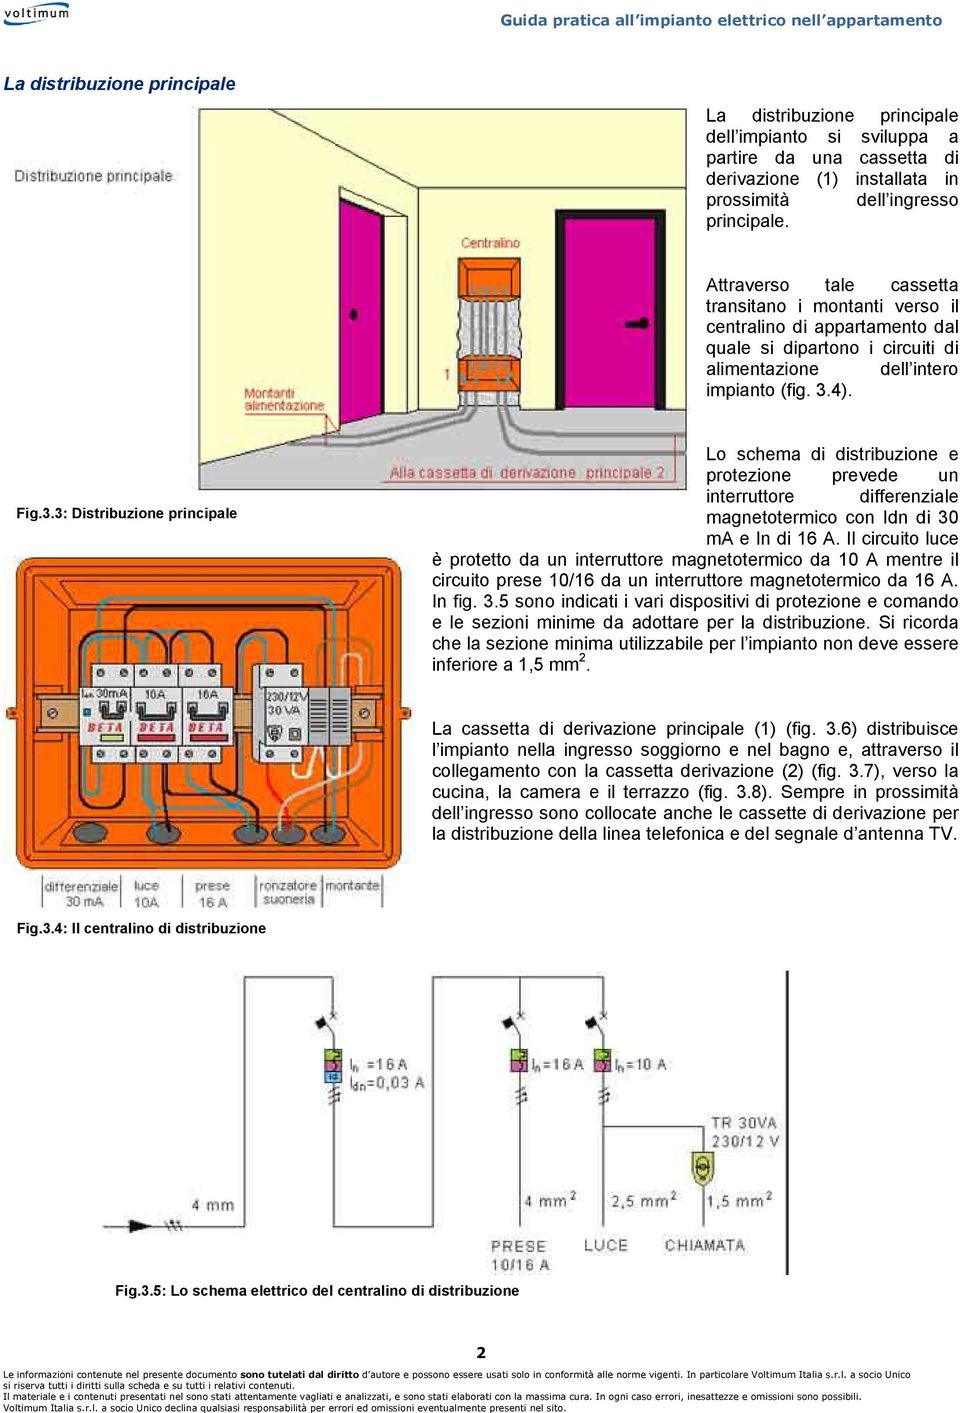 4). Fig.3.3: Distribuzione principale Lo schema di distribuzione e protezione prevede un interruttore differenziale magnetotermico con Idn di 30 ma e In di 16 A.